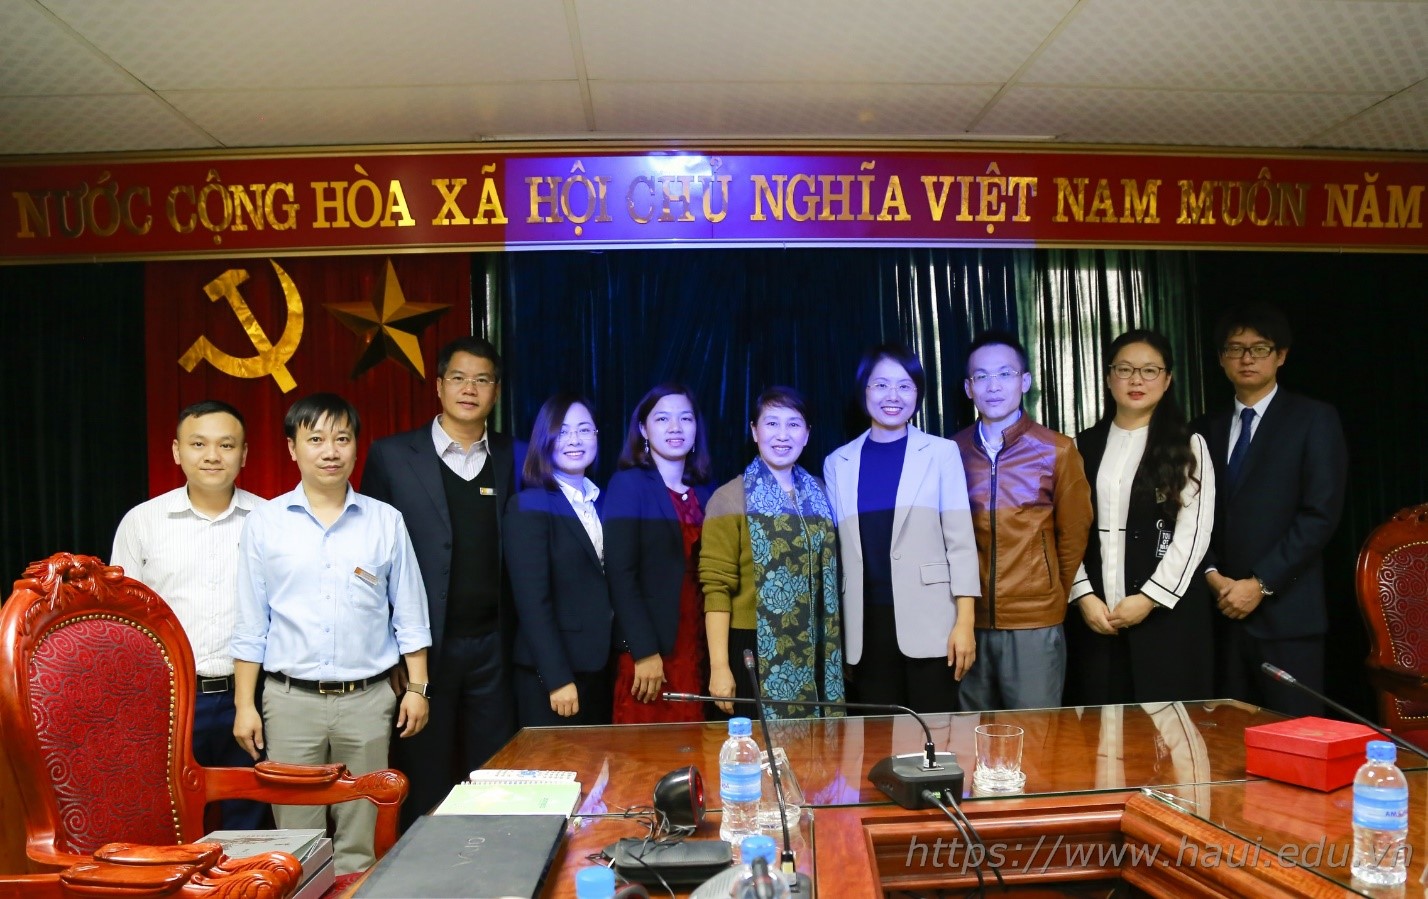 Đại học Công nghiệp Hà Nội hợp tác với Học viện Xiangsihu, Trung Quốc